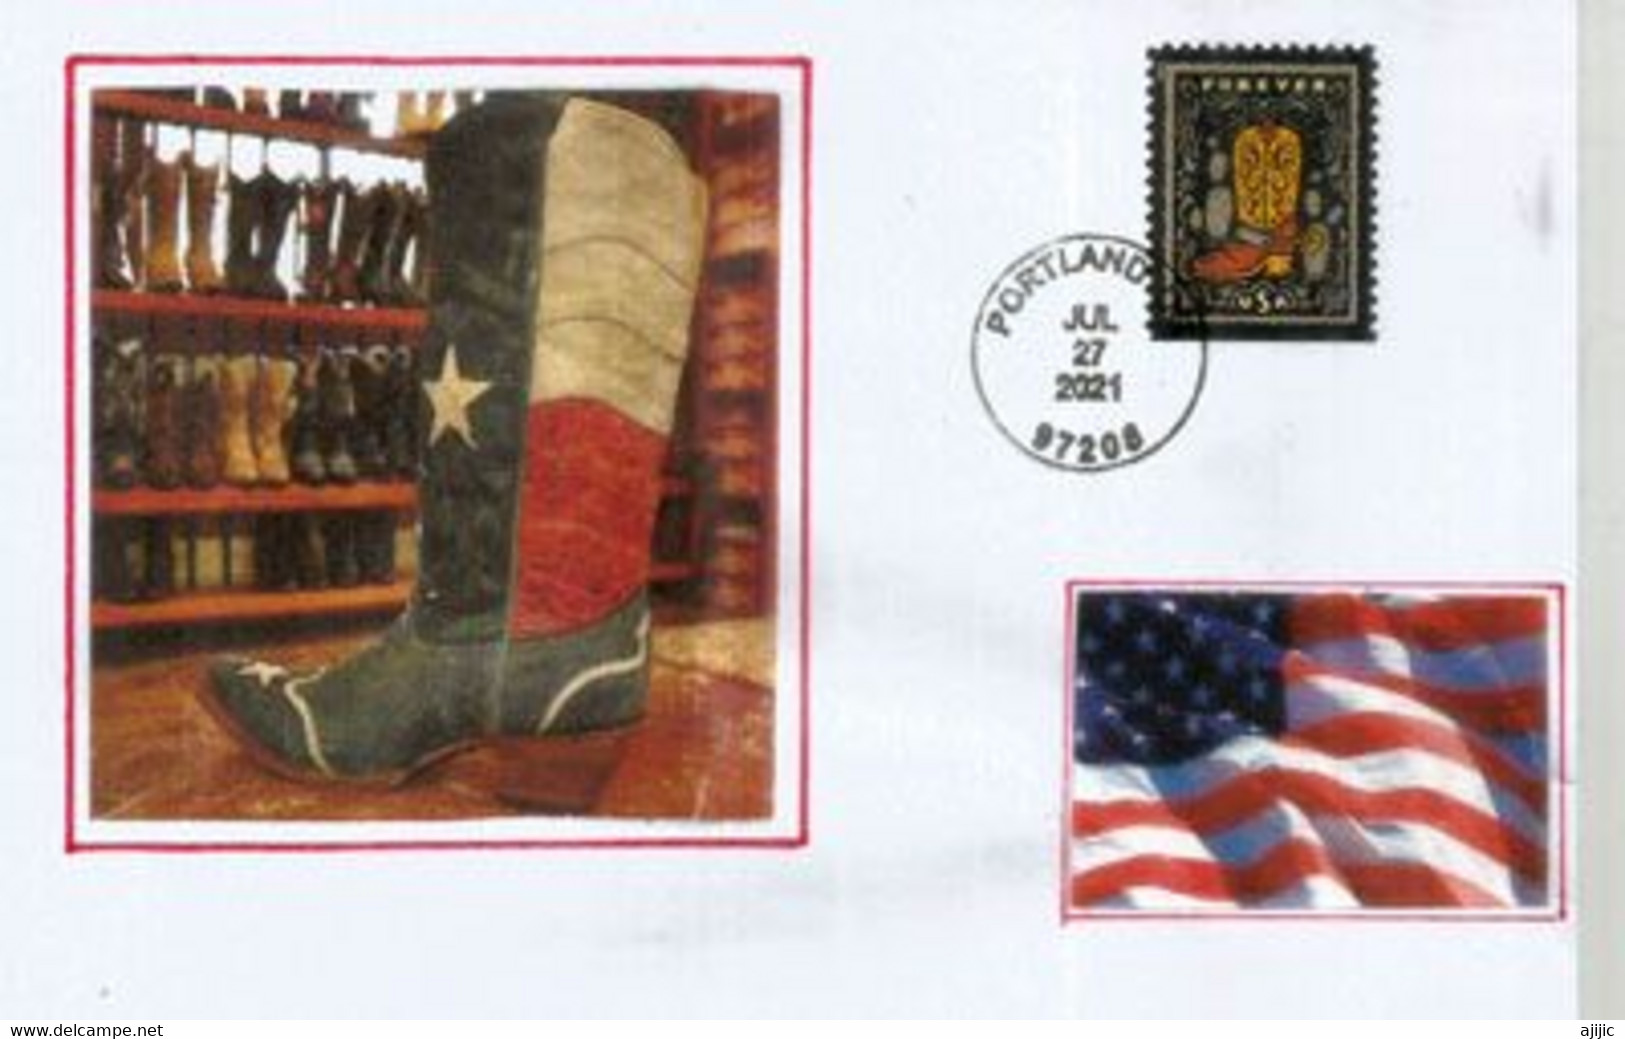 Western Wear Stamps 2021.(Farm & Ranch Work Clothing Garments) Letter Portland. Oregon. - Cartas & Documentos